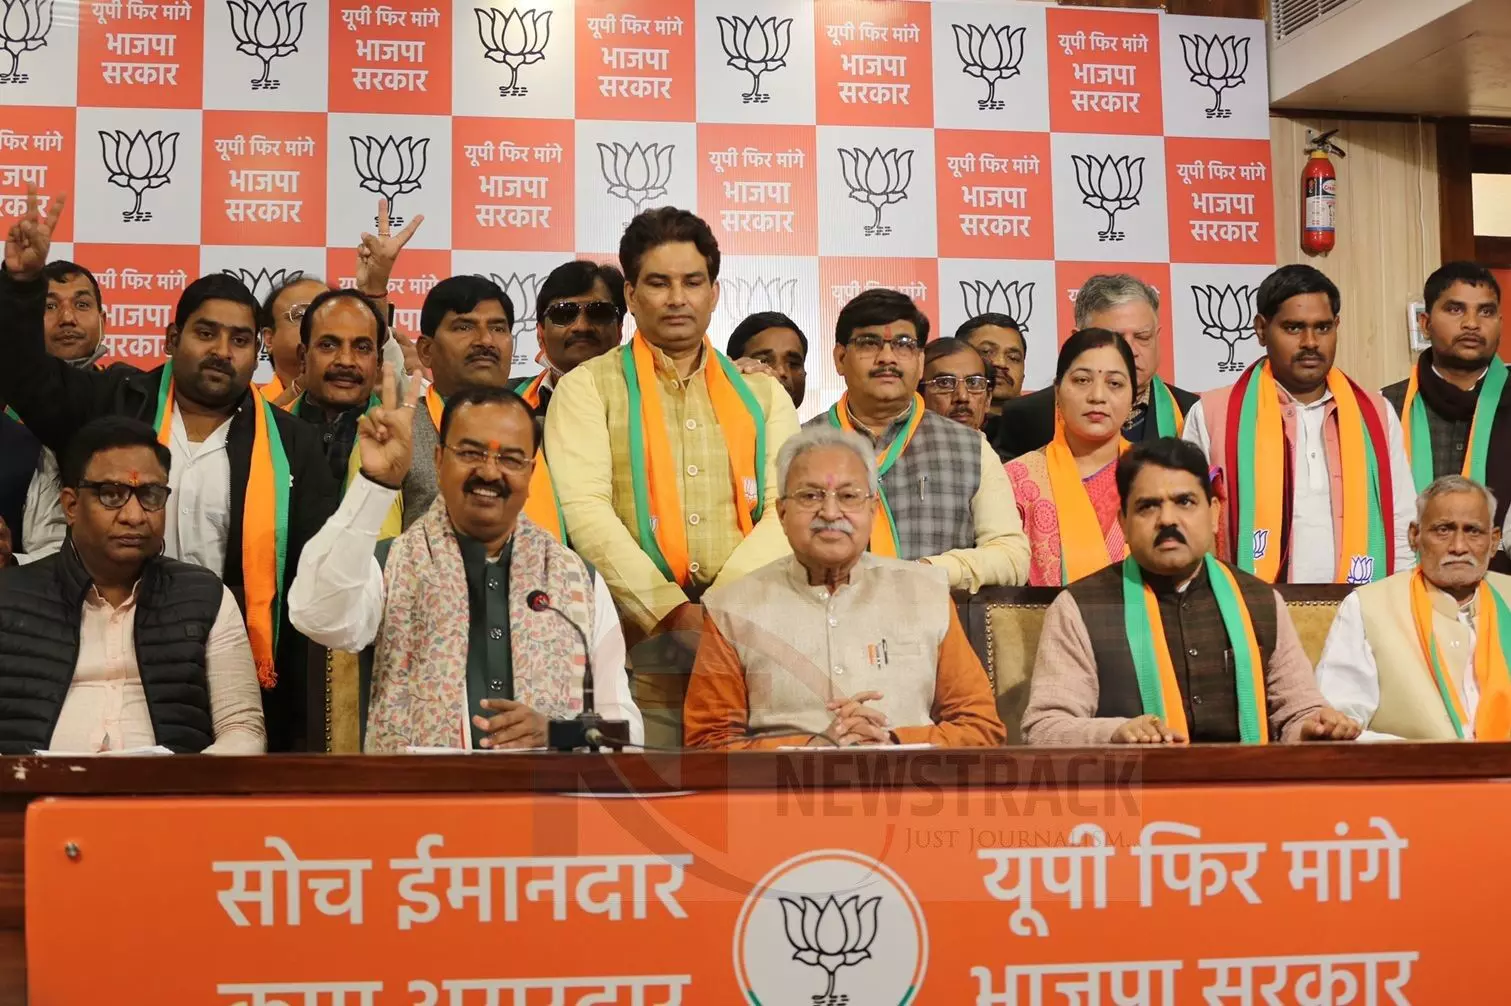 Leaders of various parties joined BJP